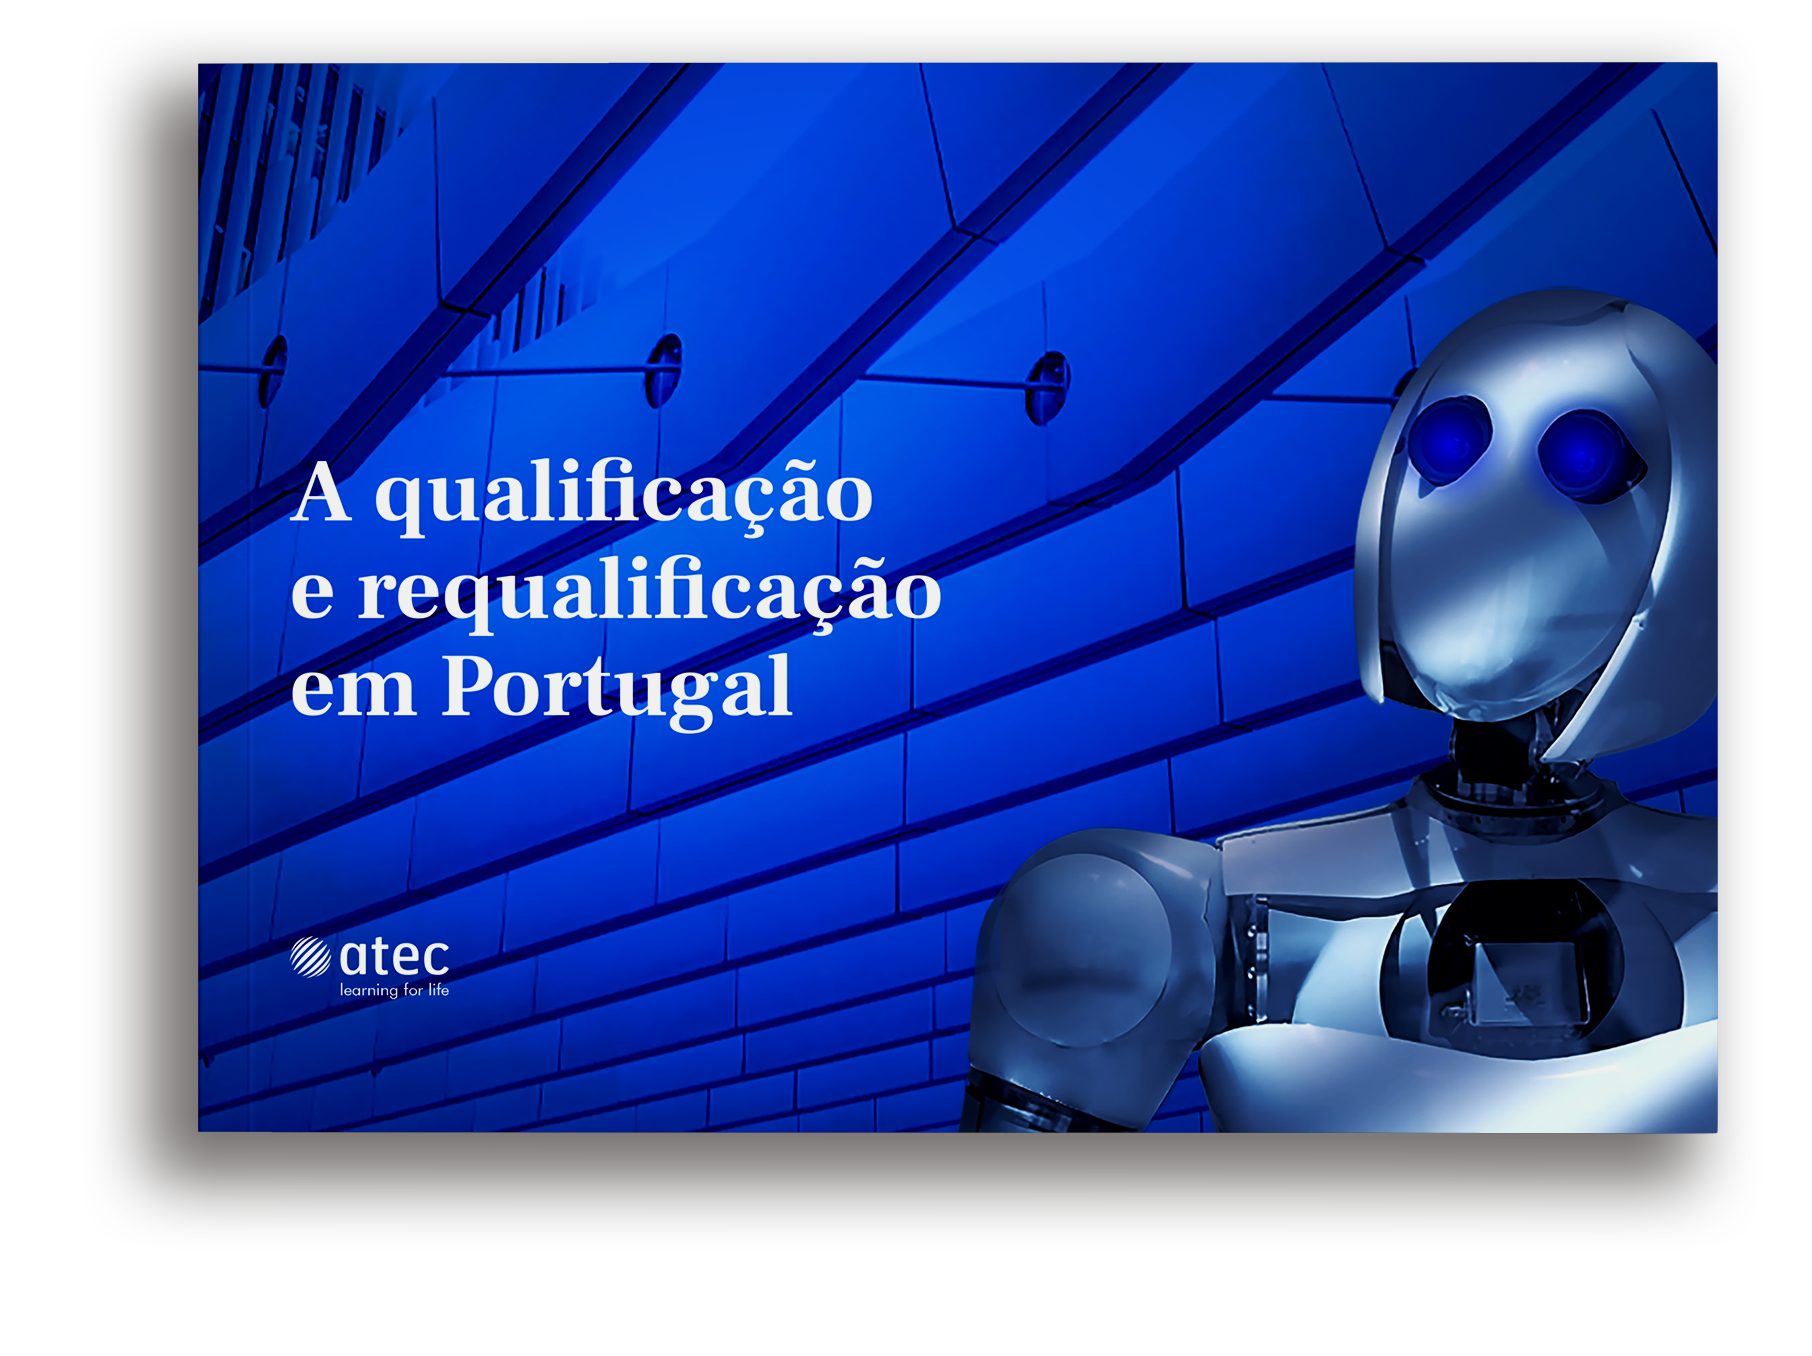 Qualificacao e Requalificacao em Portugal Estudo Pagina Website